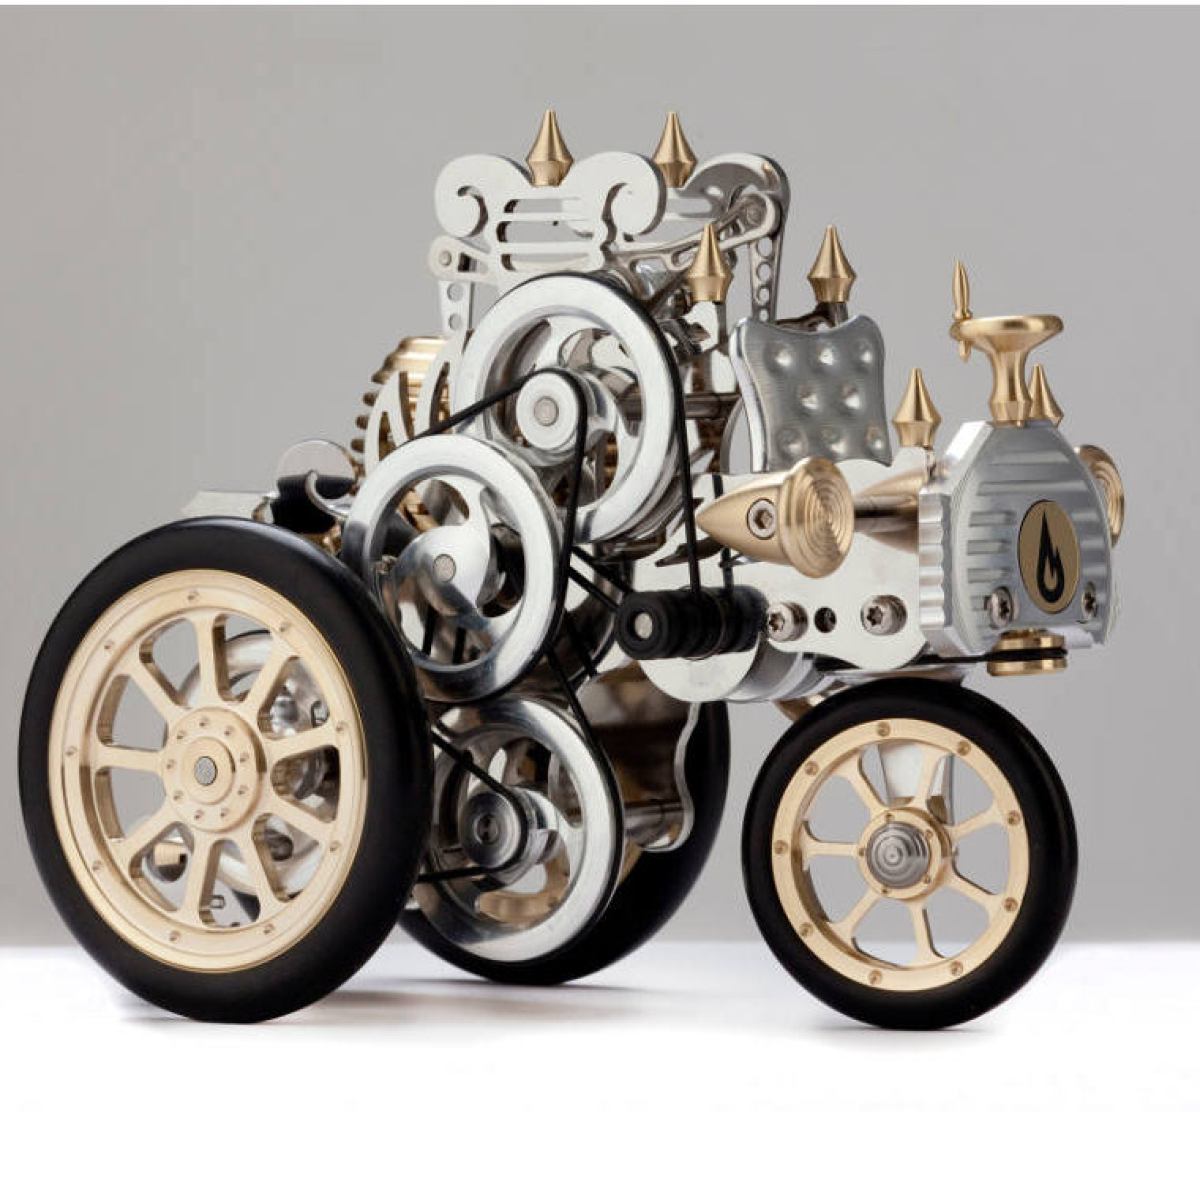 Modellauto mit Stirling-Motor, inspiriert von Carl Benz